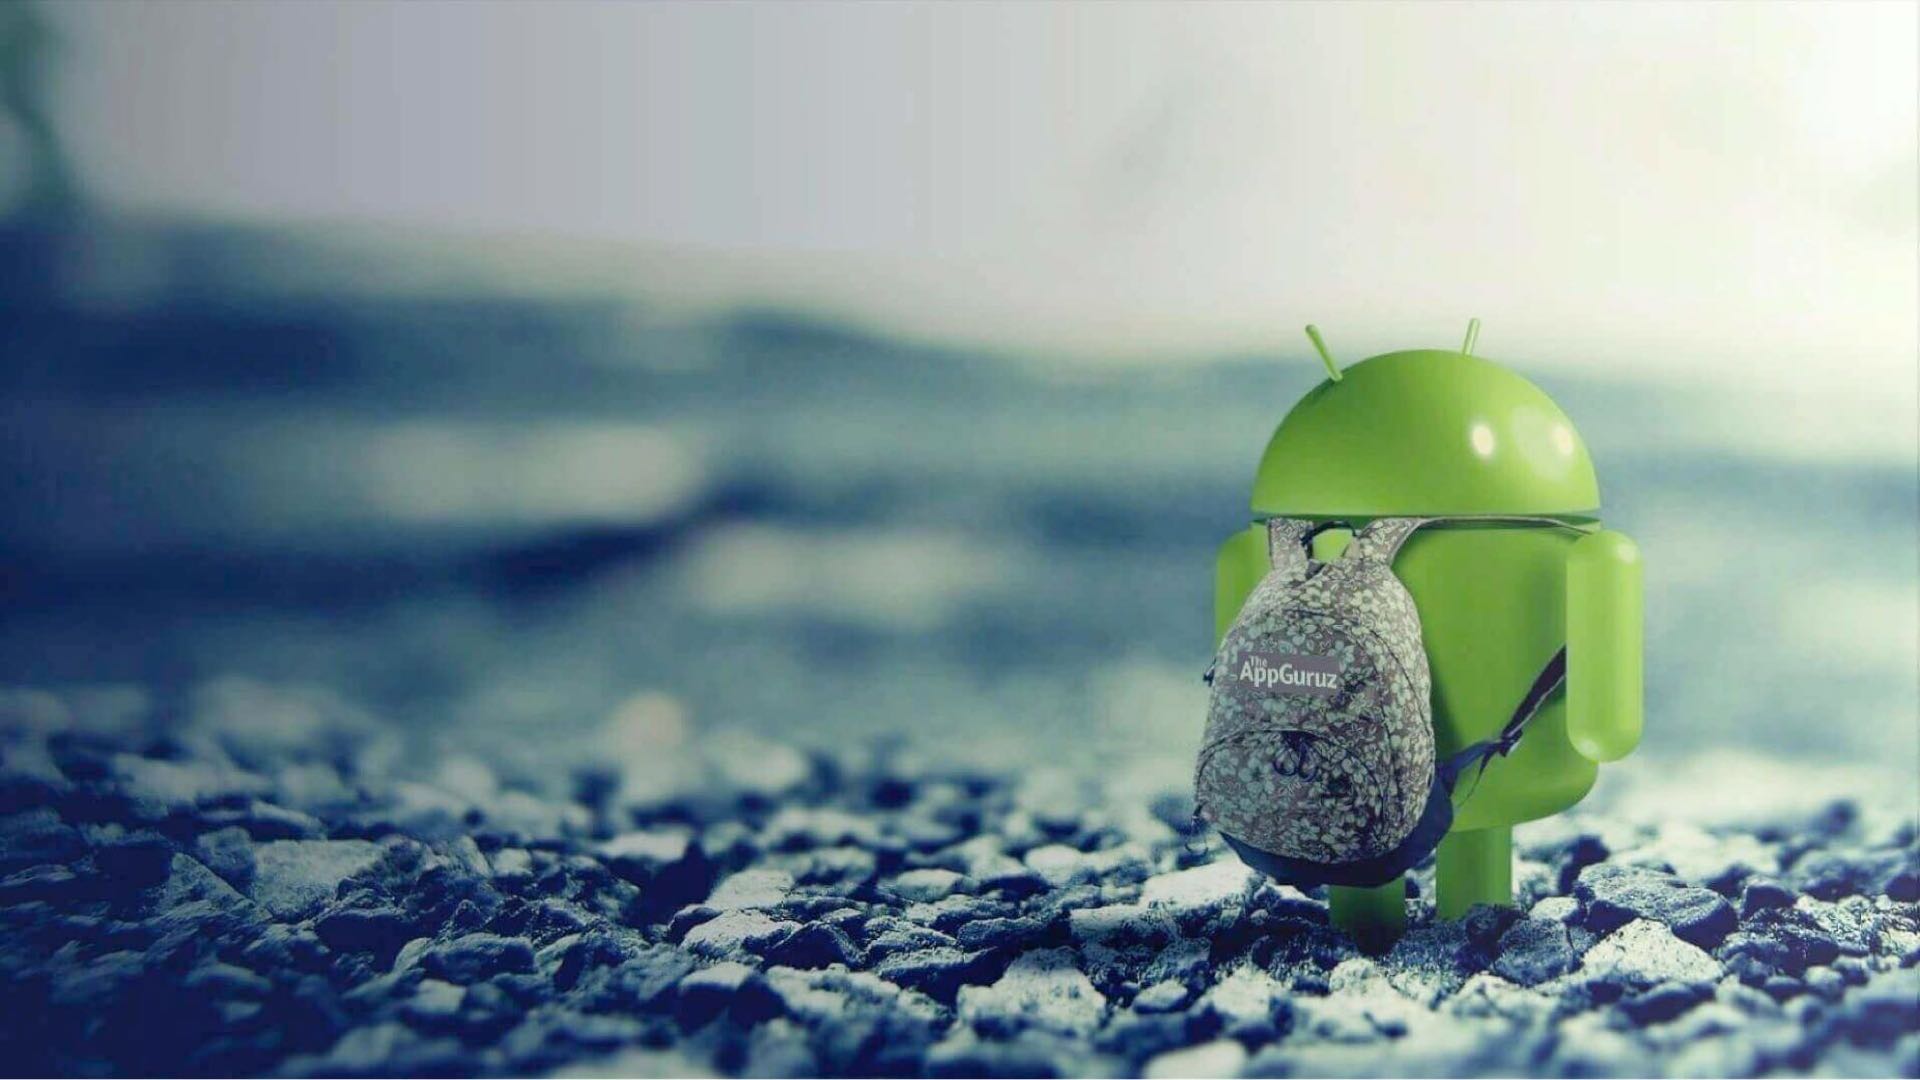 sfondo per sviluppatori android,verde,acqua,congelamento,fotografia,fotografia di still life